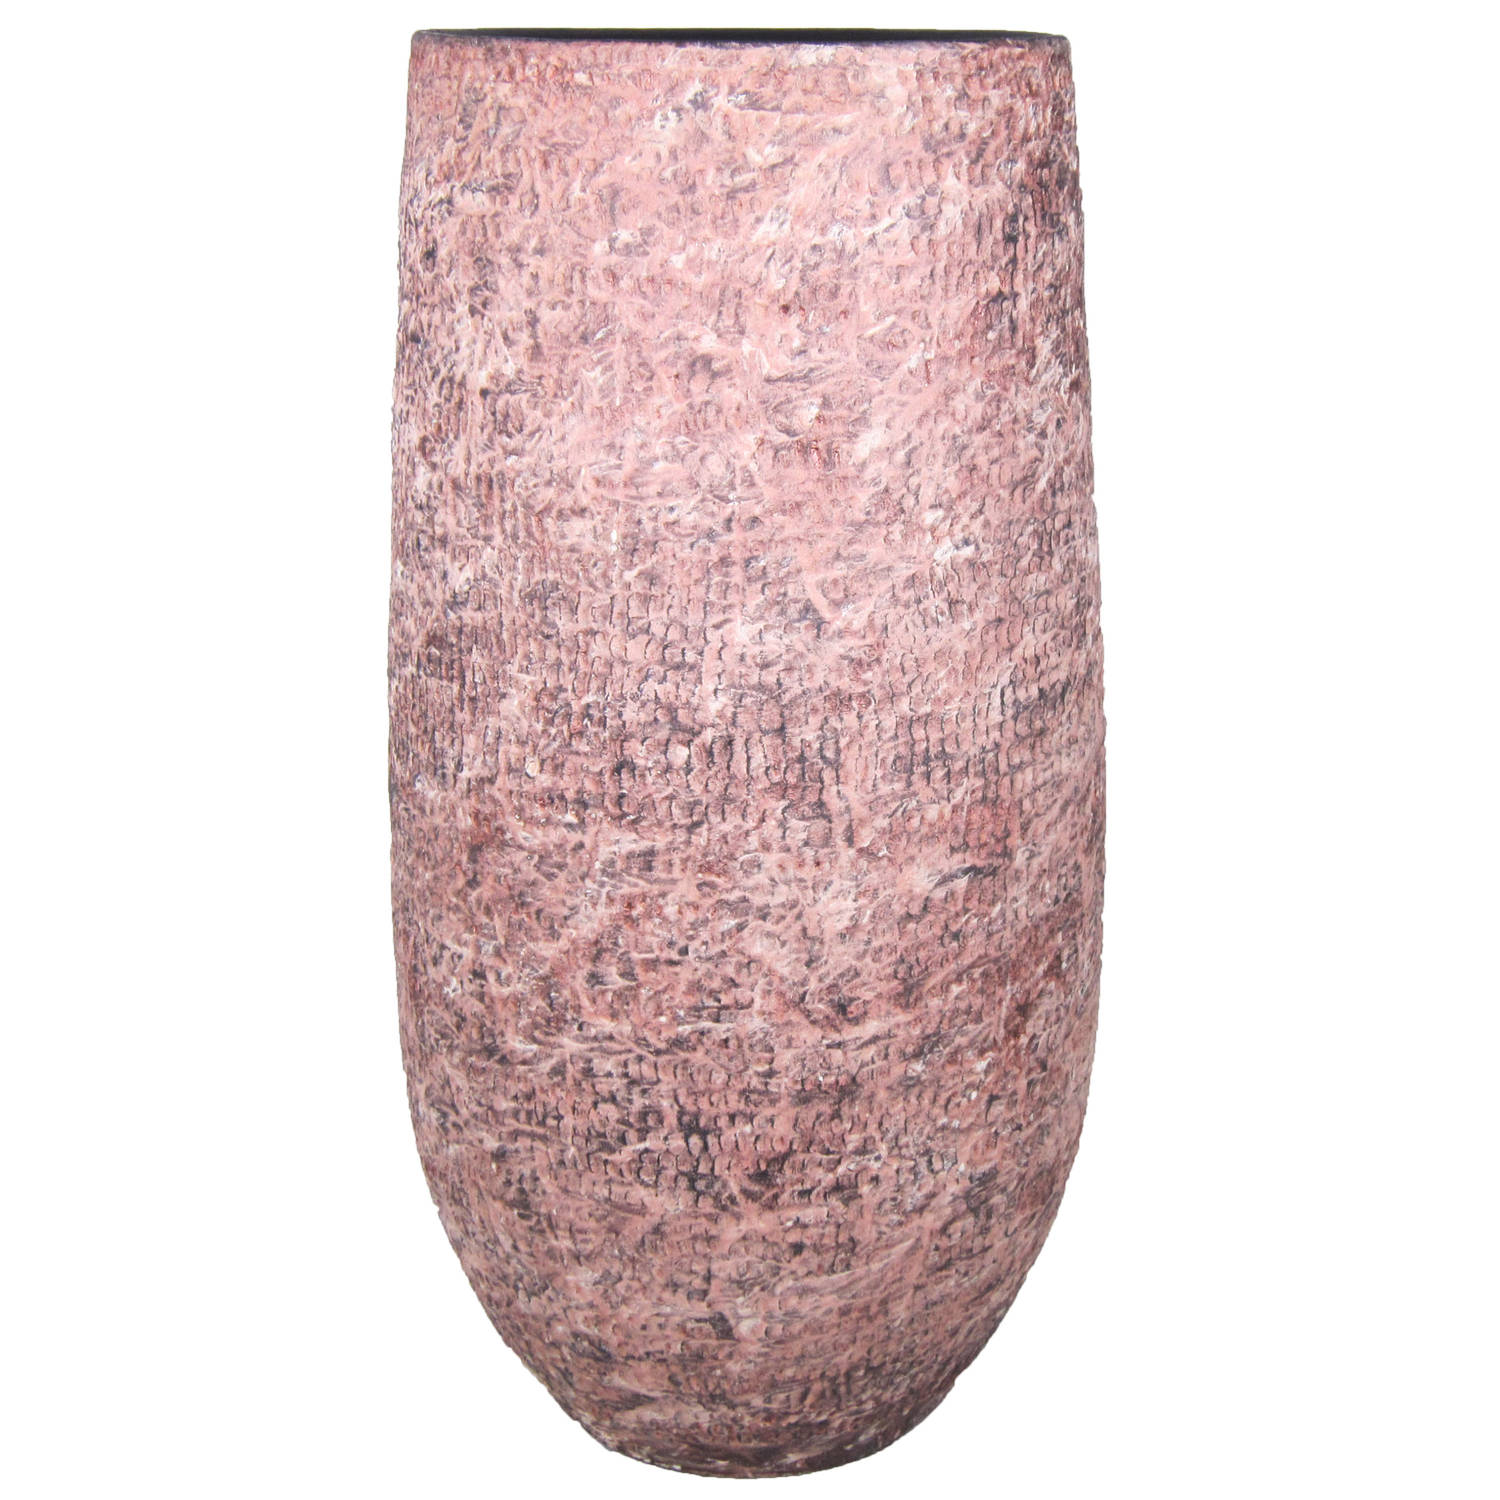 Talloos gebroken Mediaan Vaas of hoge plantenpot van keramiek oud roze motief D19 cm en H35 cm -  Vazen | Blokker